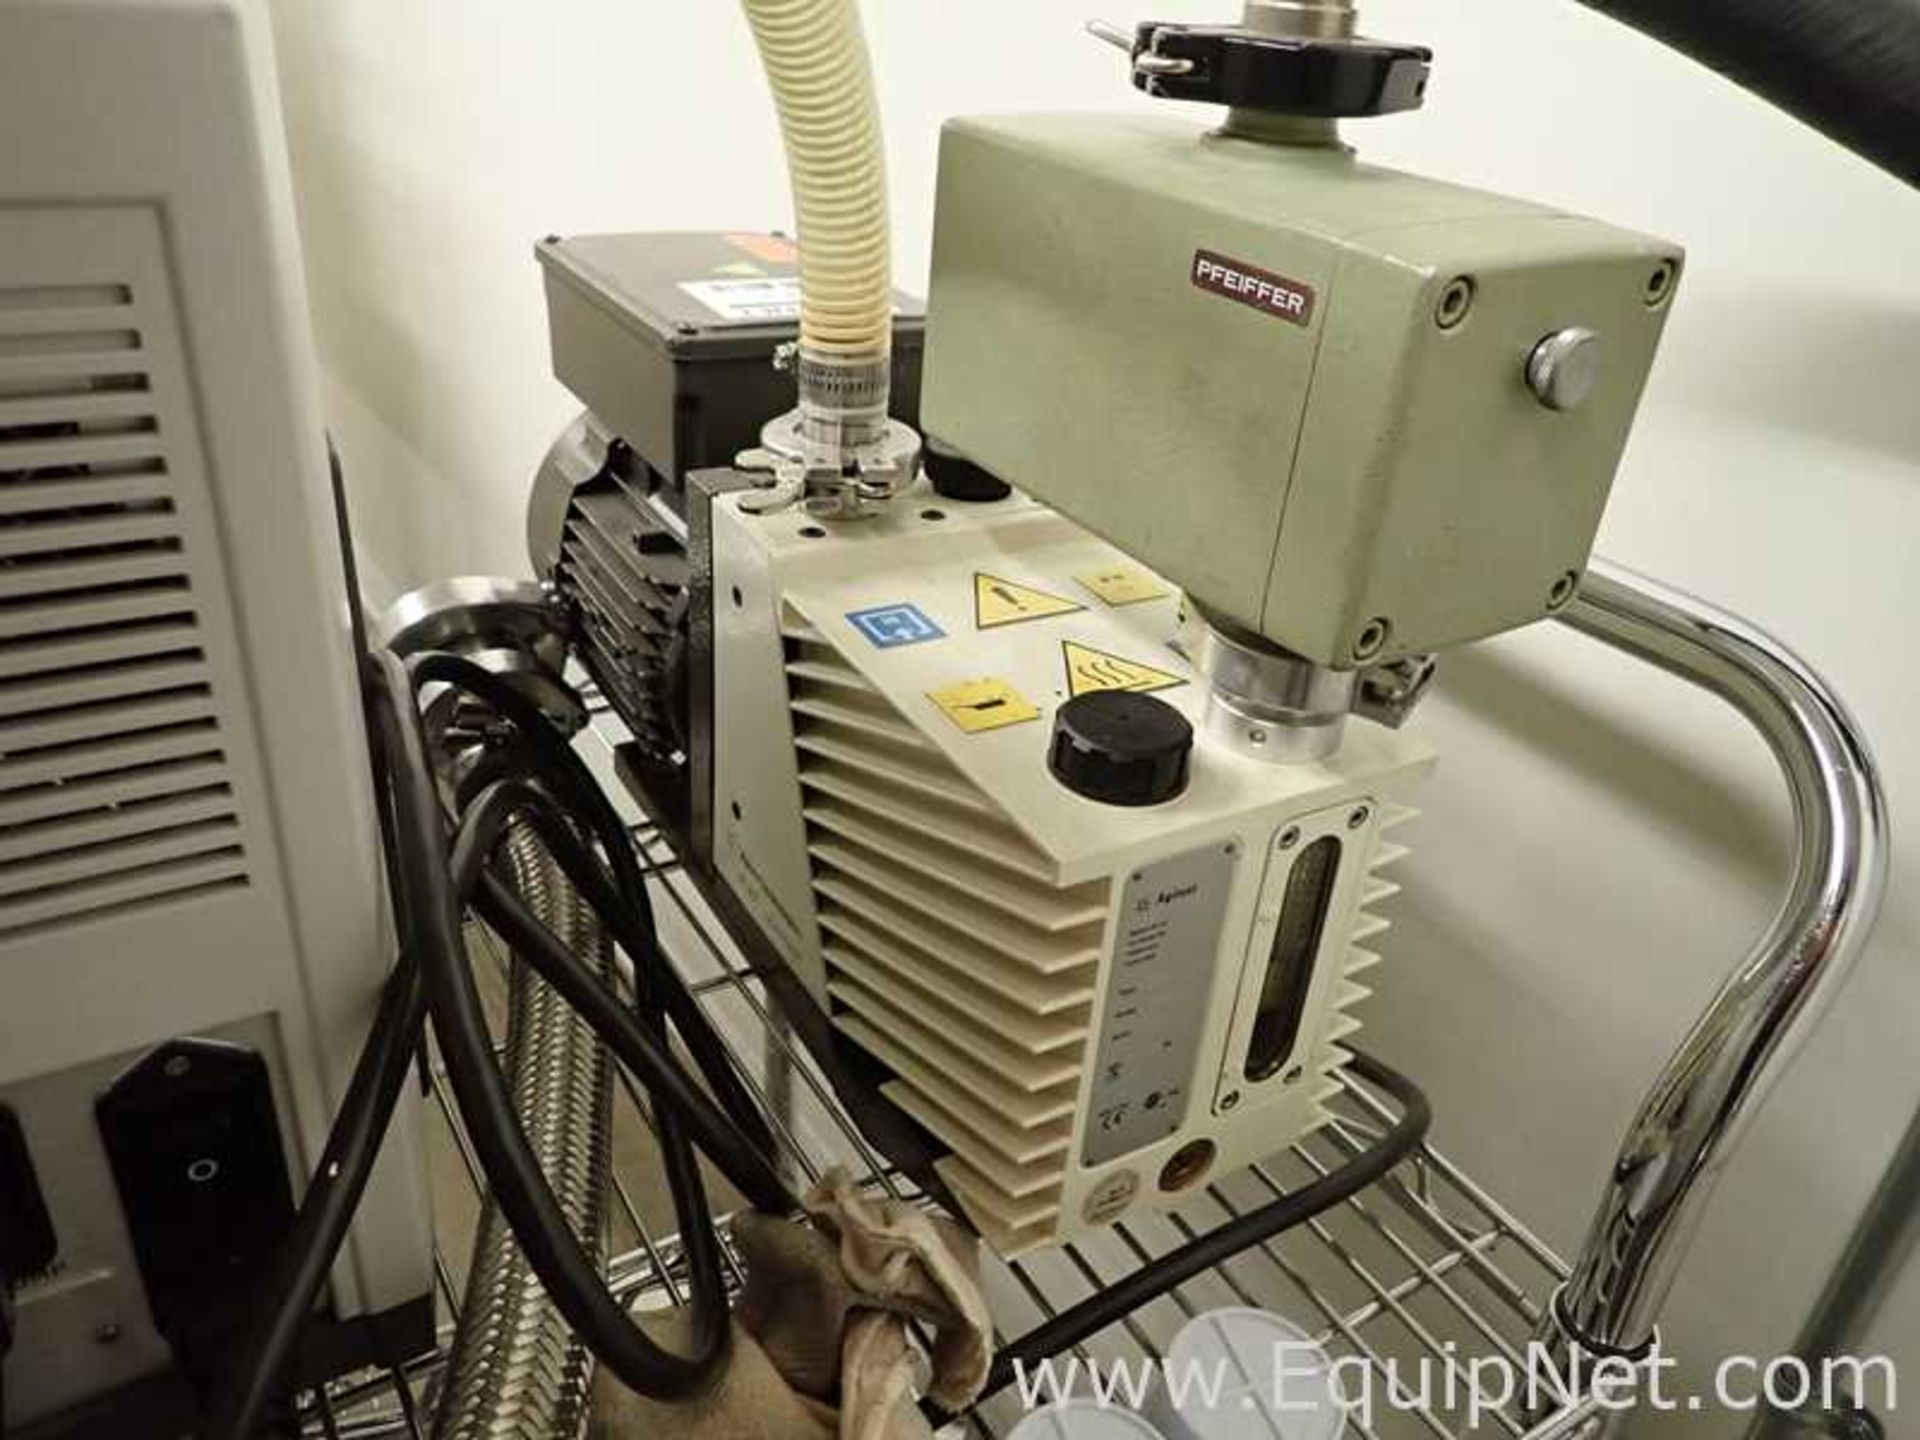 Agilent VSBR151 Leak Detector with DS 302 Vacuum Pump - Image 7 of 8